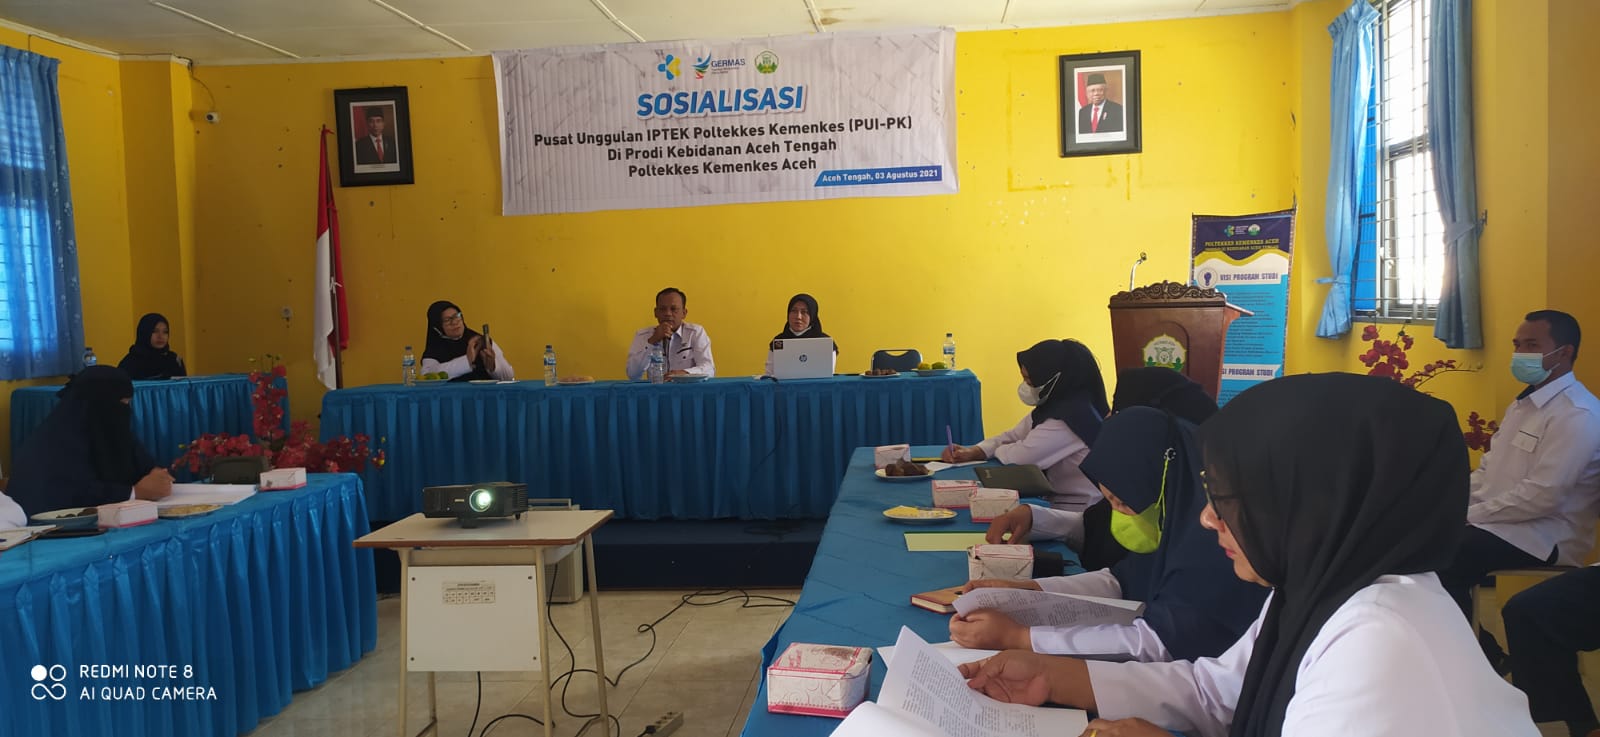 Sosialisasi PUI PK di Kebidanan Aceh Tengah